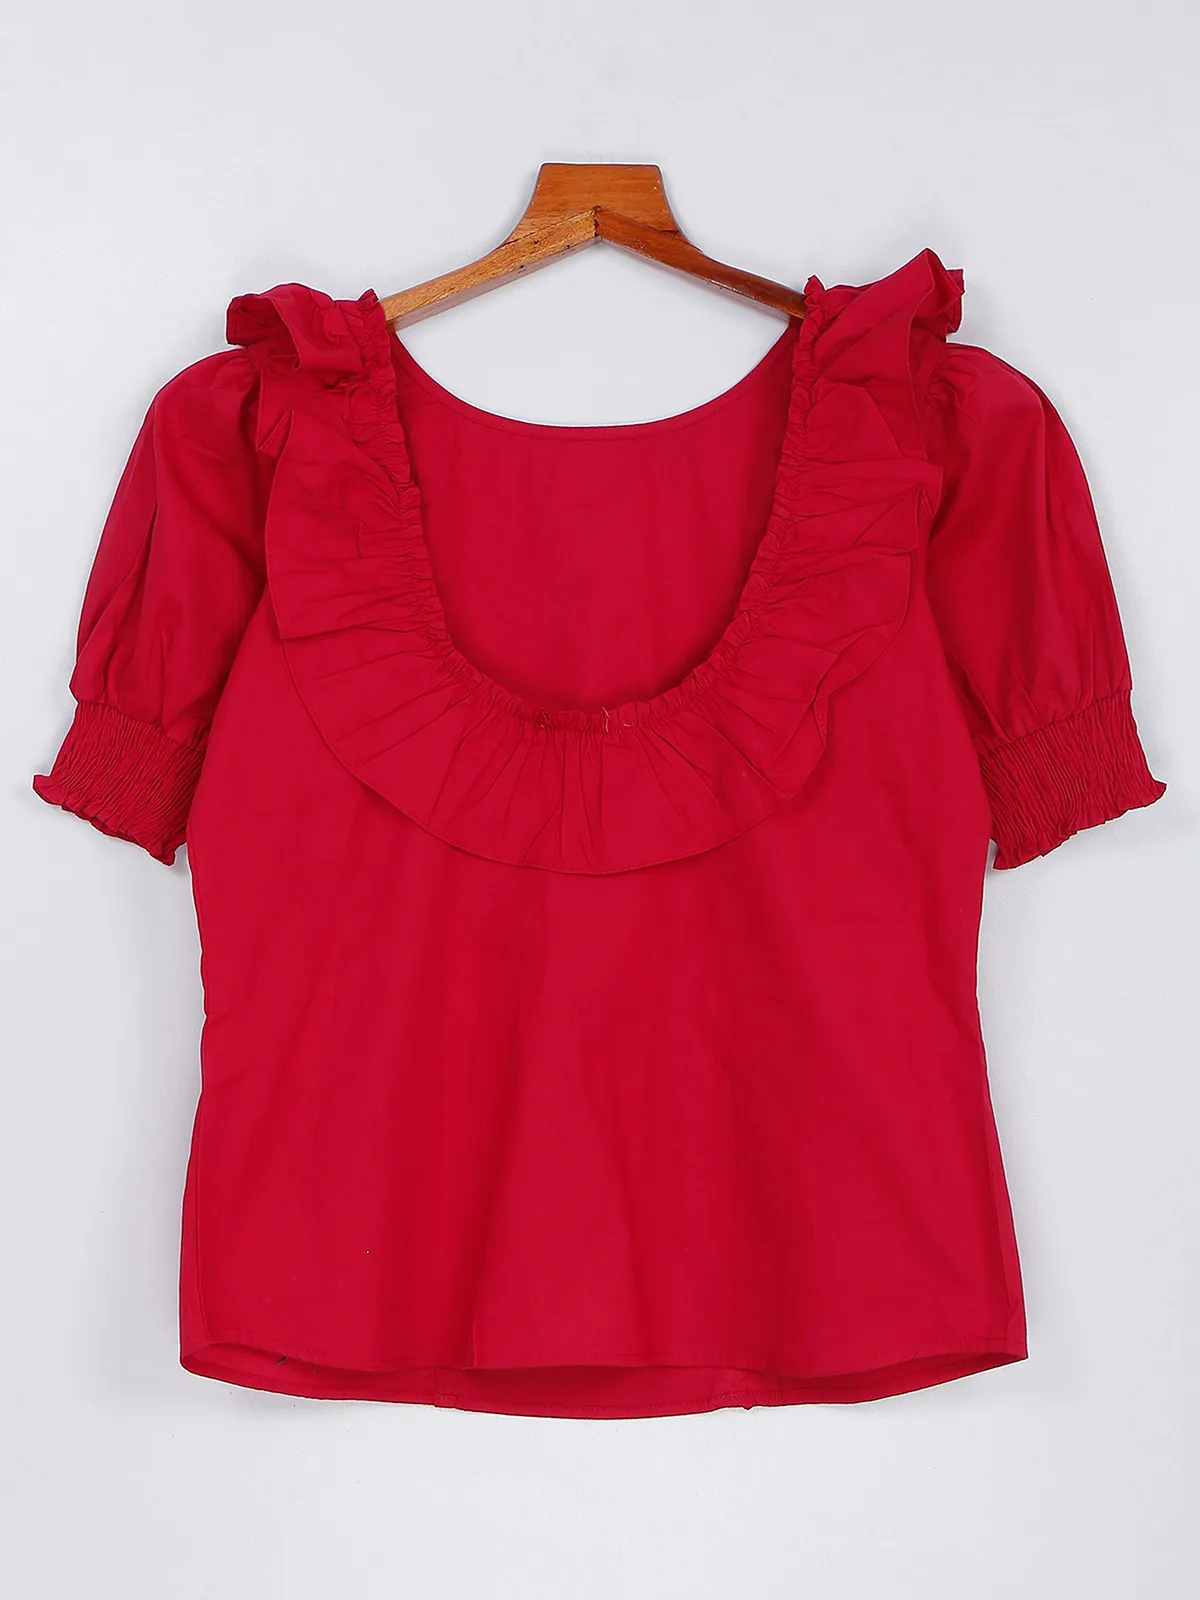 Plain red cotton top